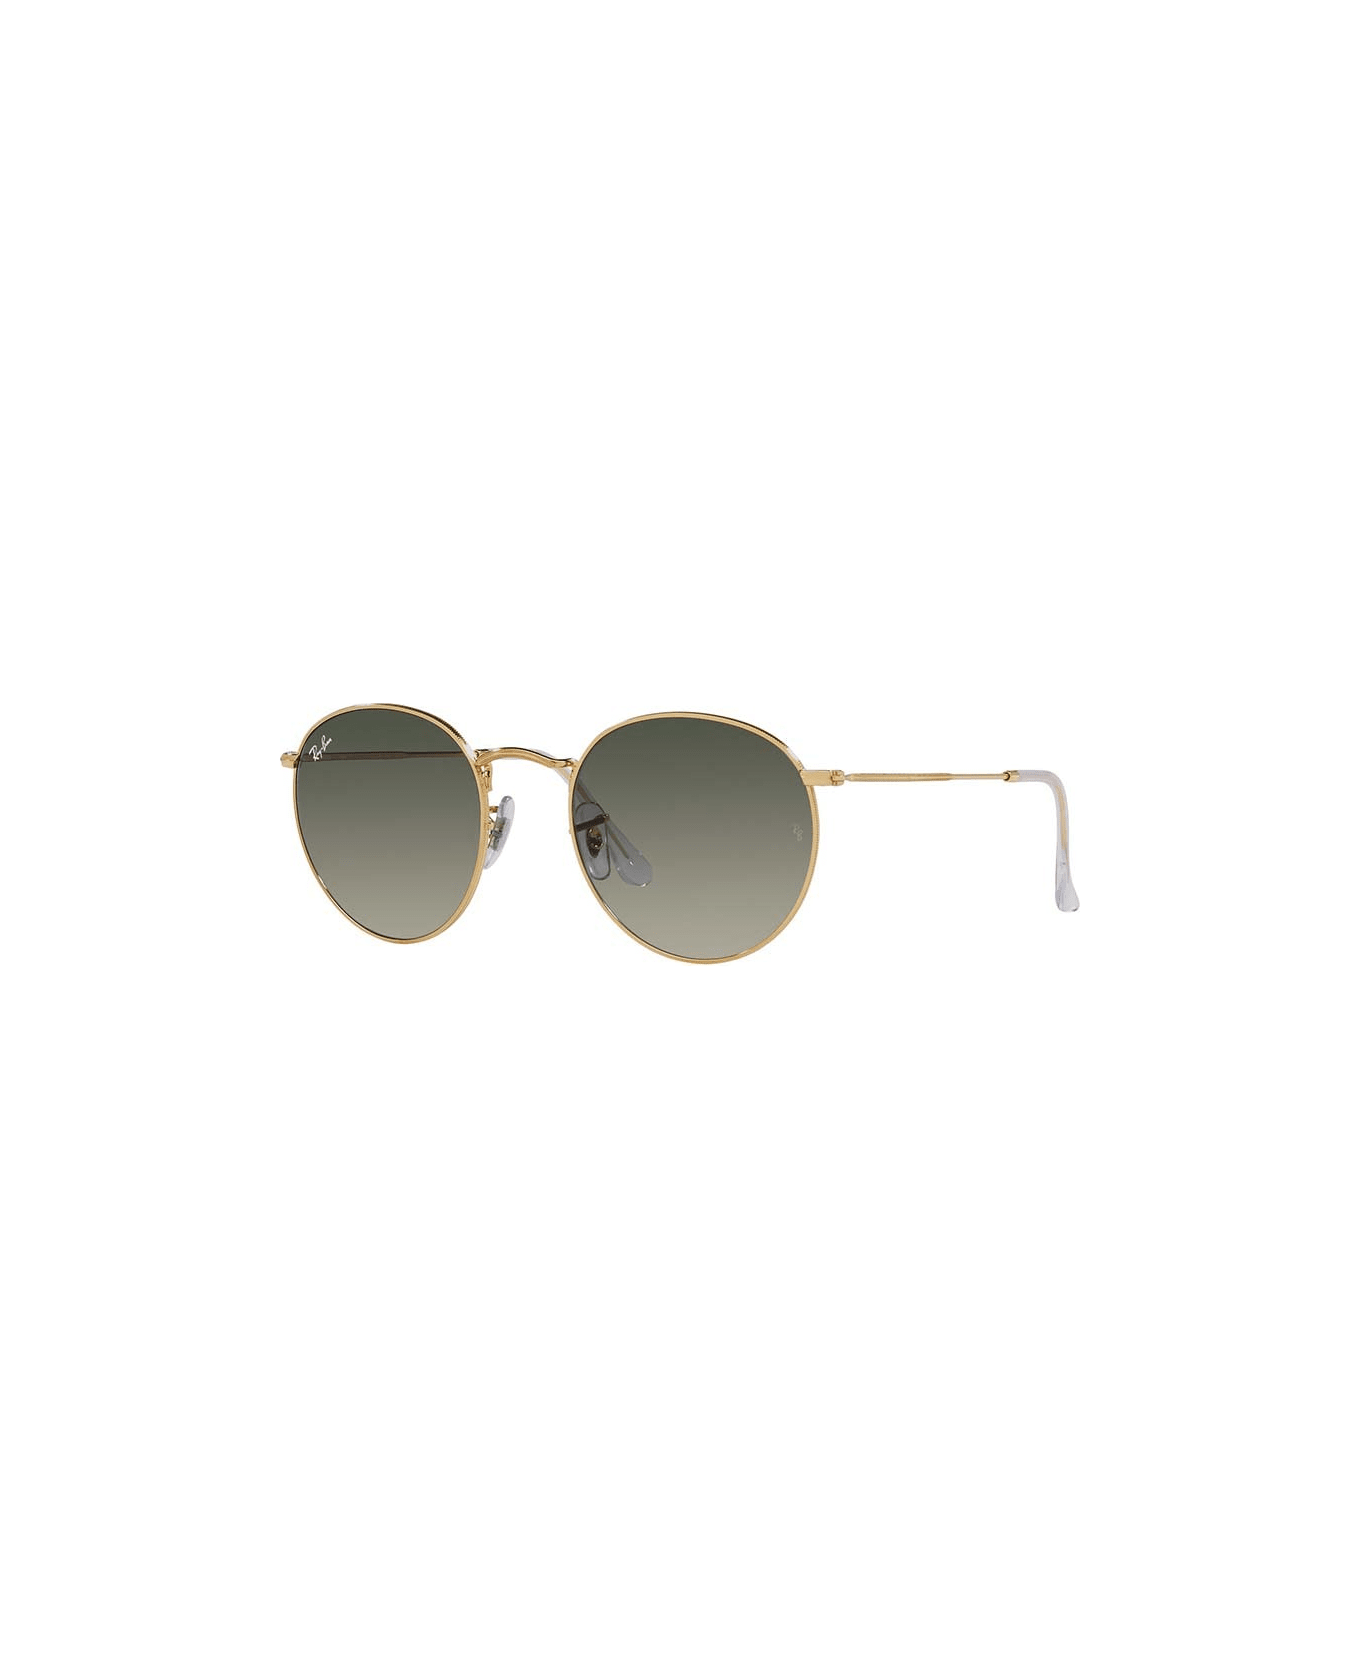 Ray-Ban Sunglasses - Oro/Grigio